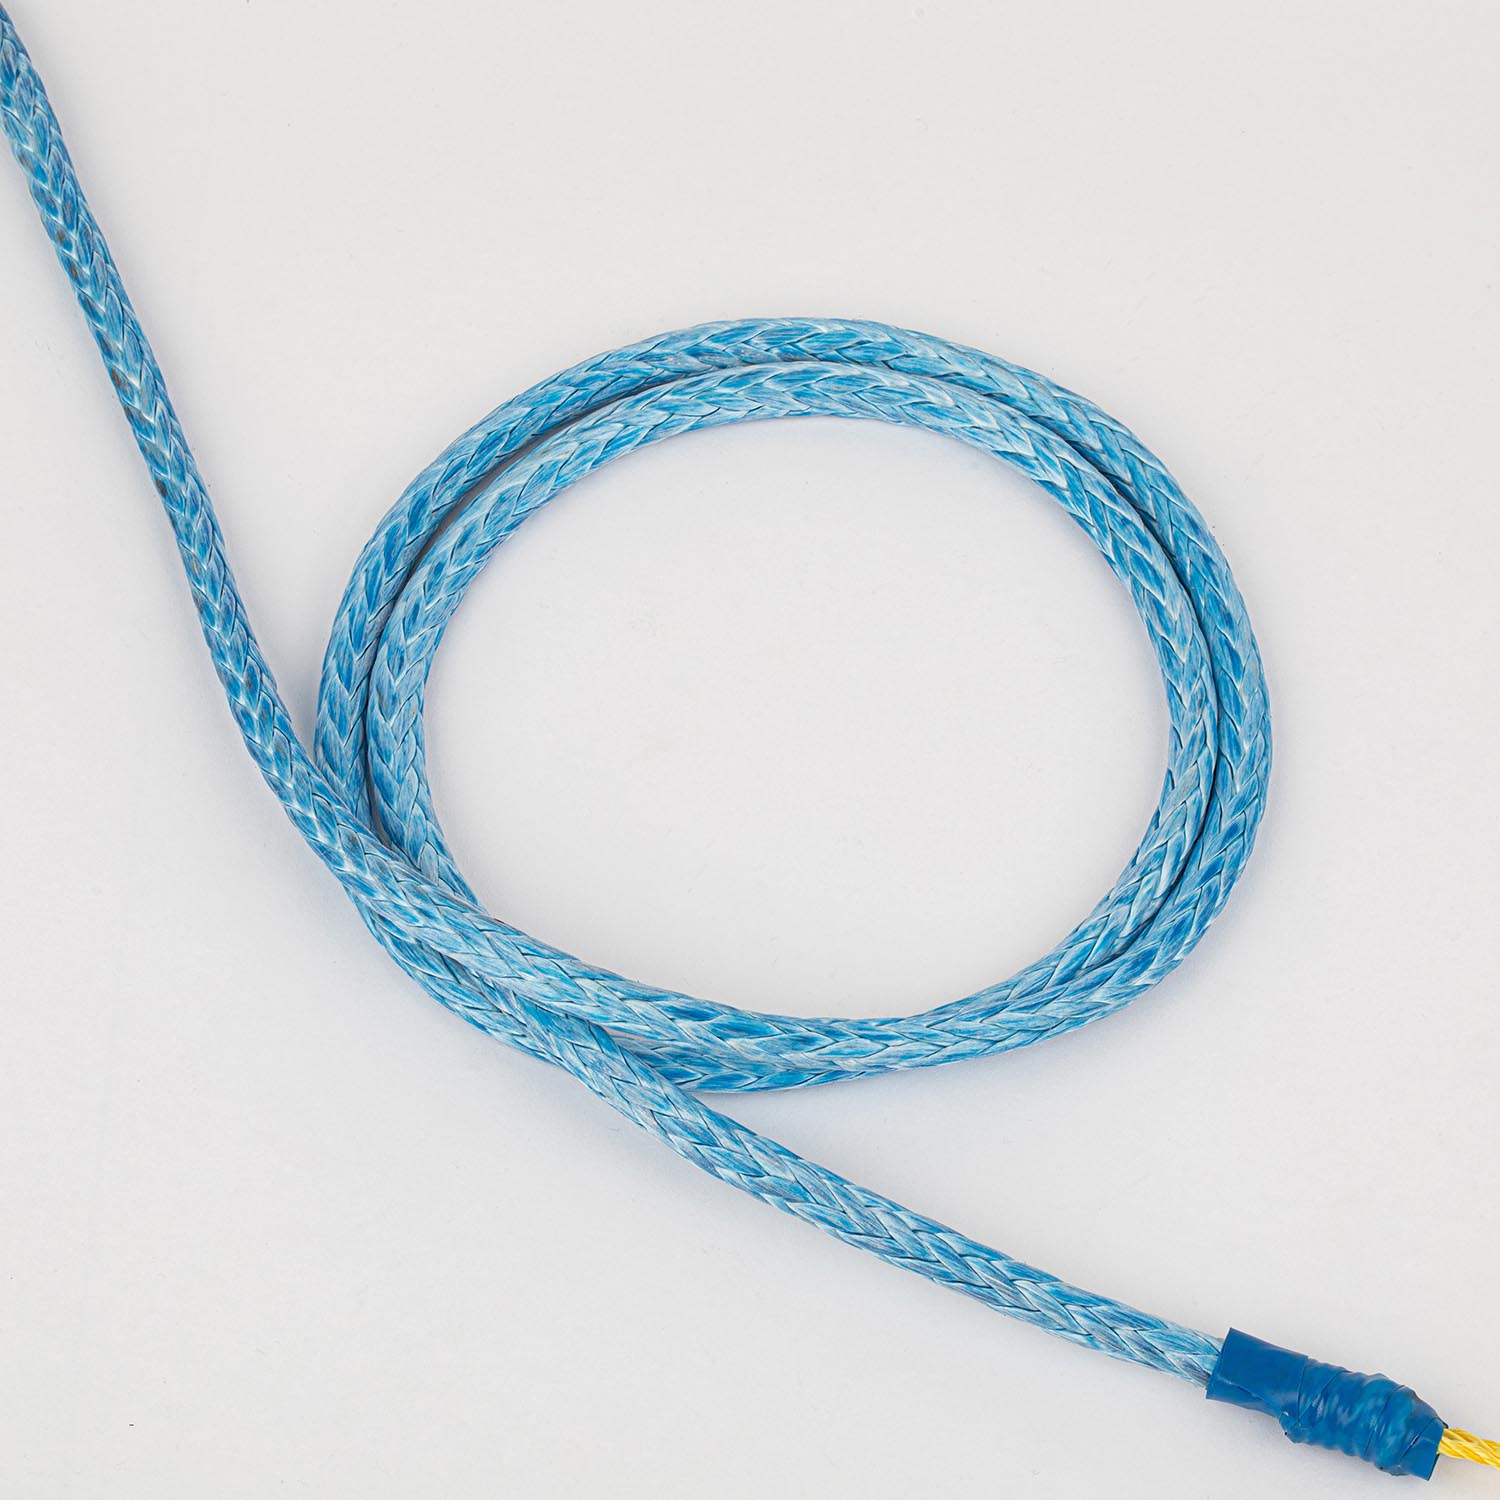 12 股合成 UHMWPE/Hmpe Hmwpe 绳绞车绳用于海上系泊船用绳